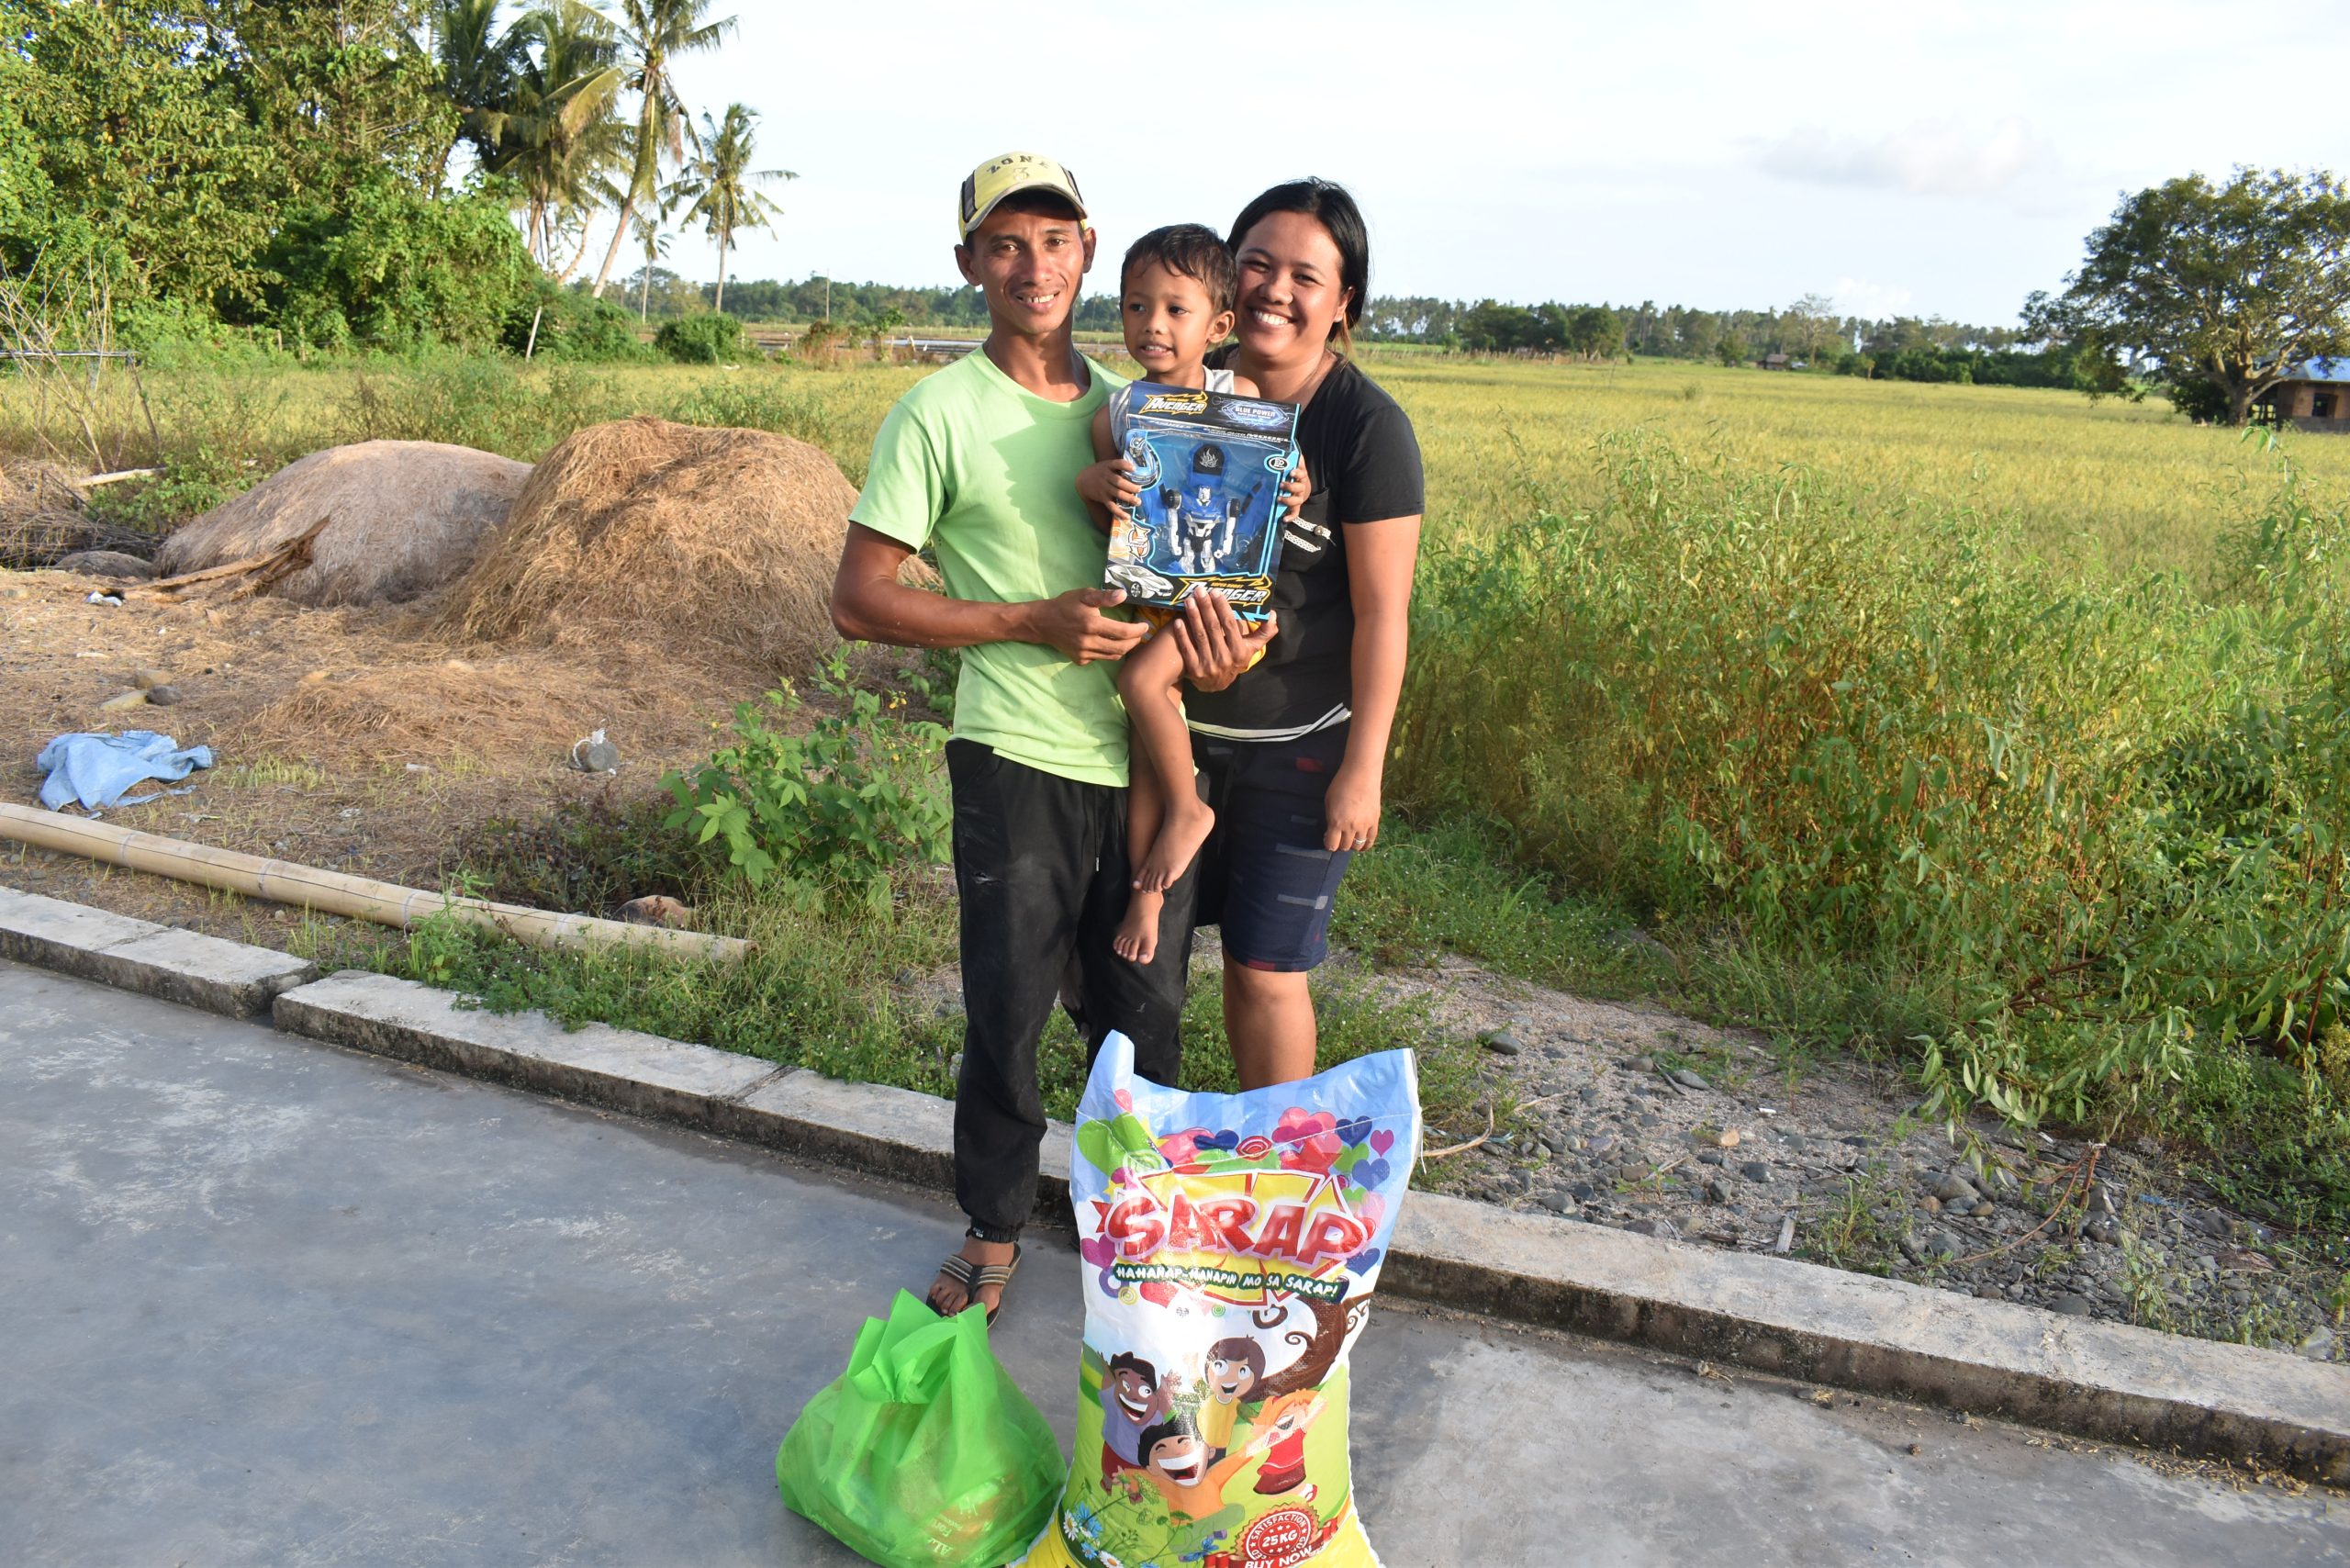 Operation Julepakke – velgørenhedsarbejde i Filippinerne